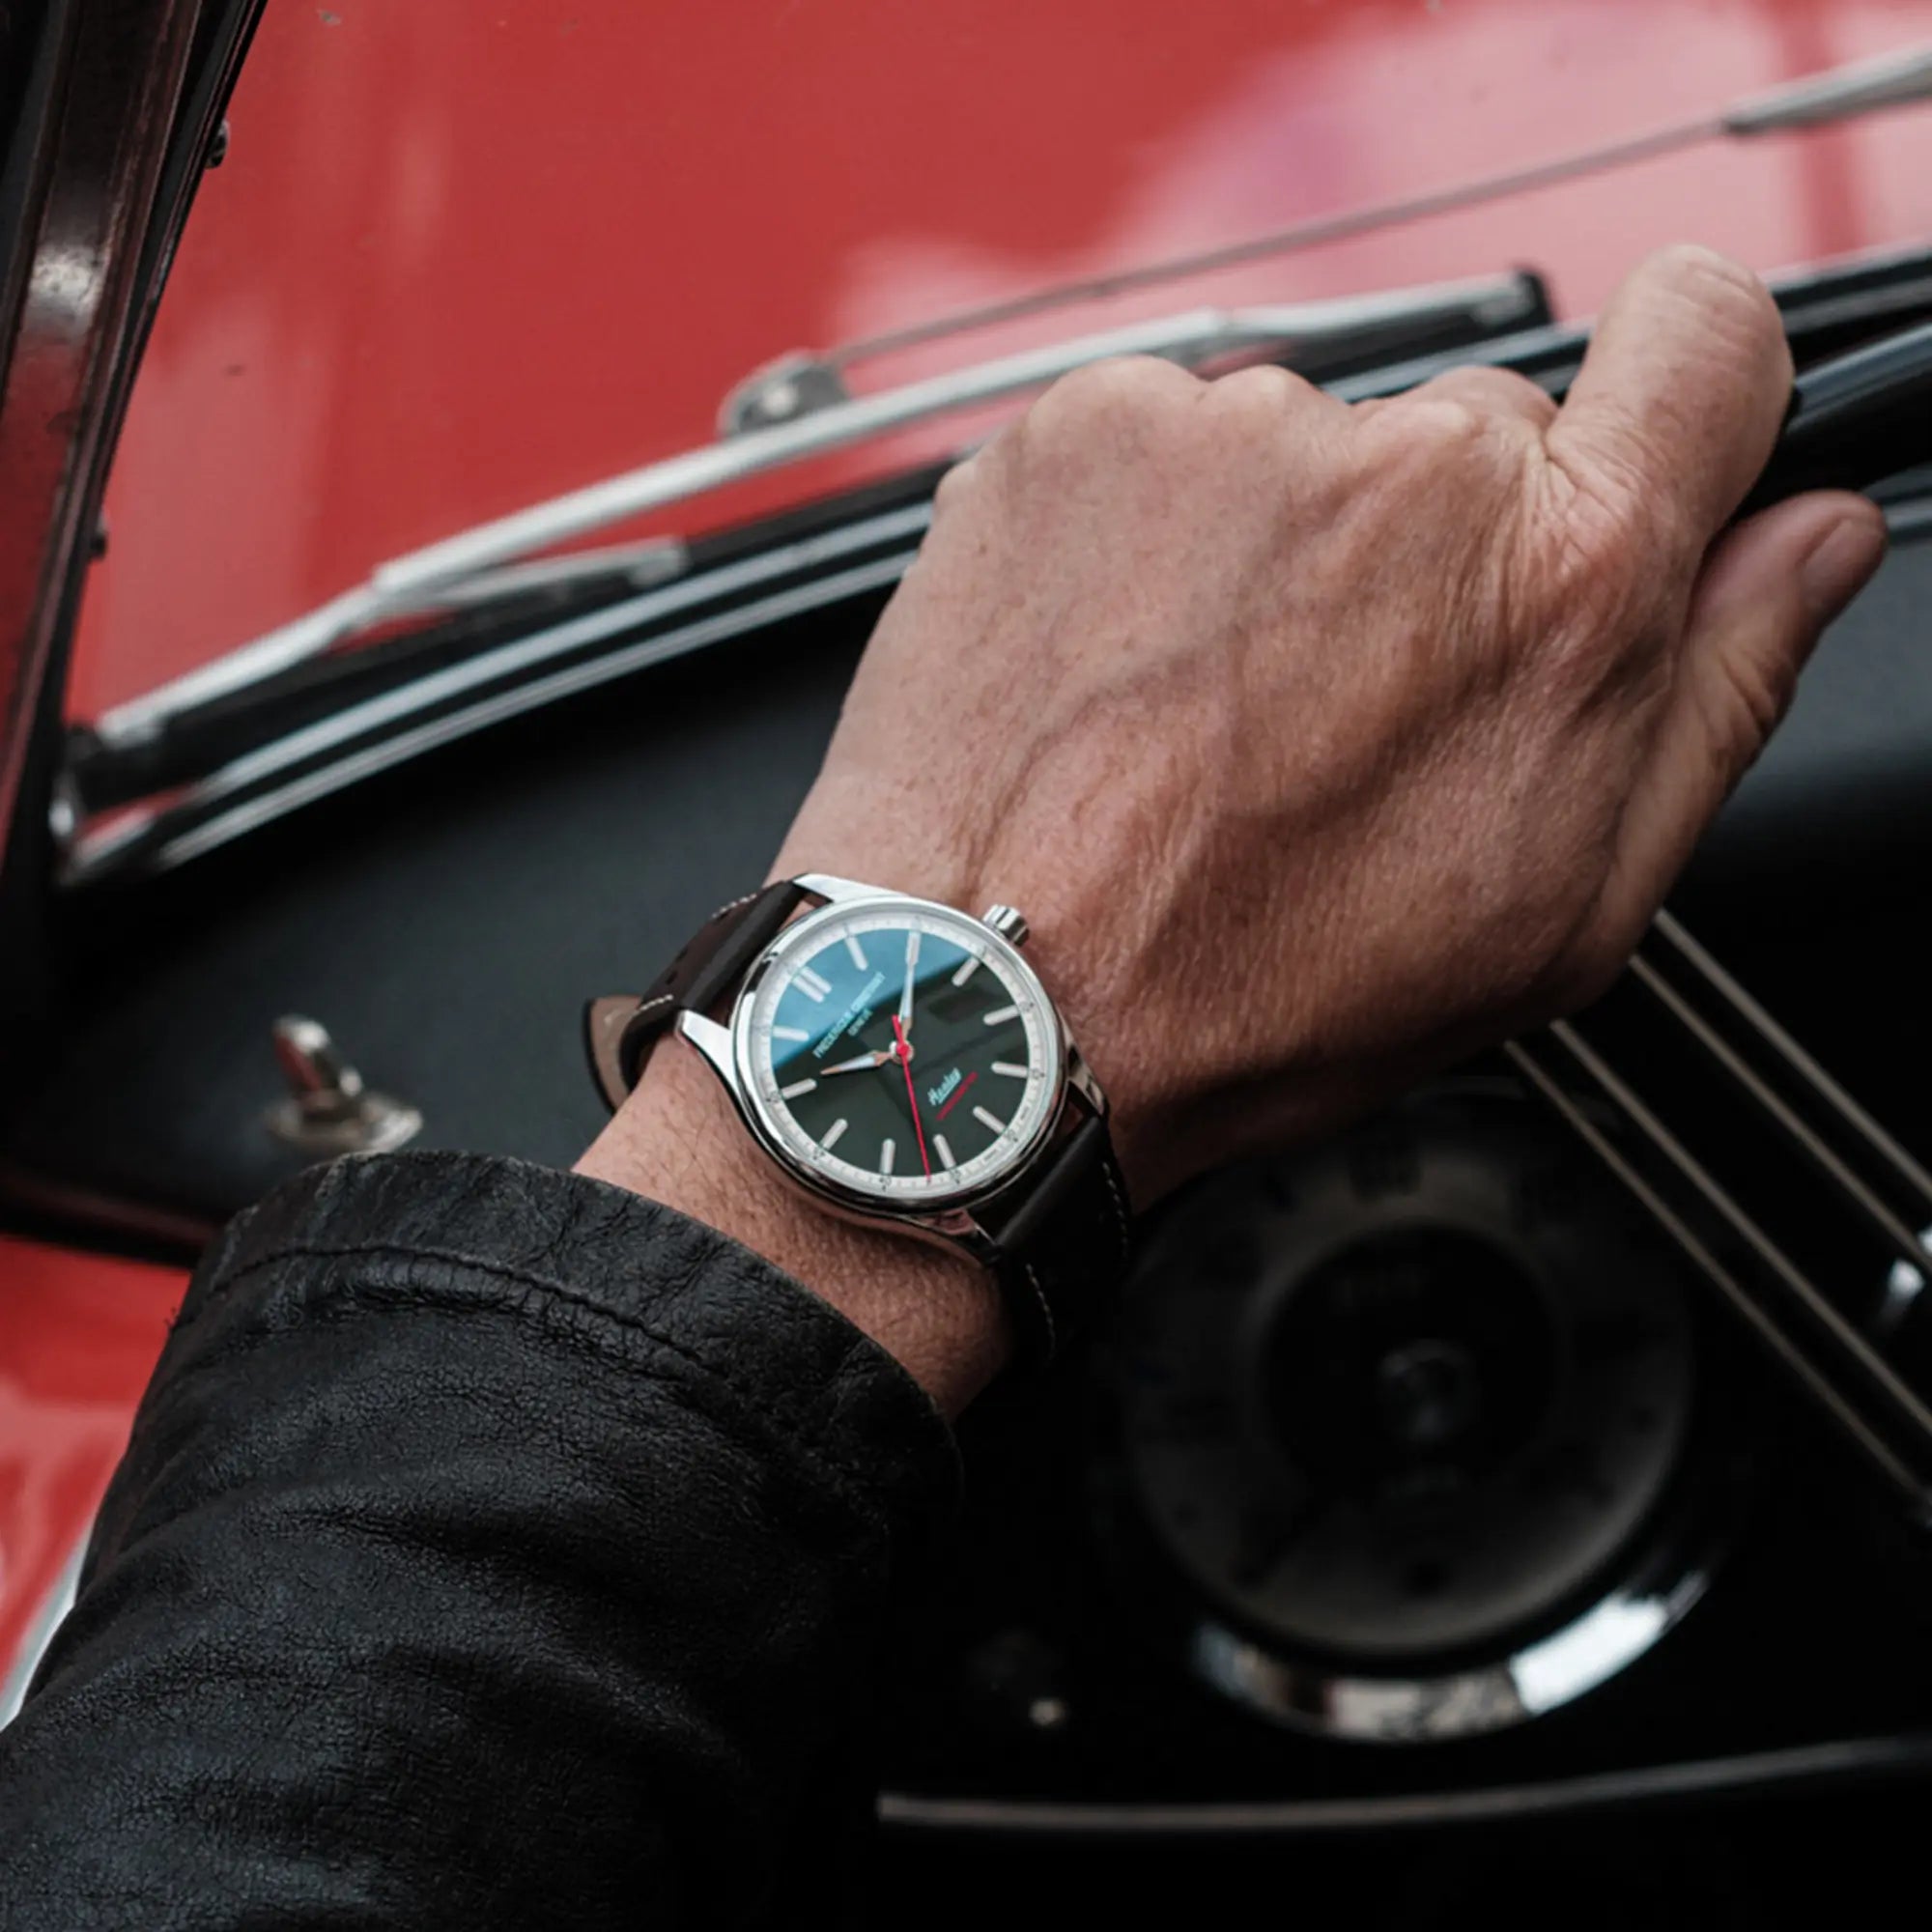 Mann trägt die "Vintage Rally Healey" Uhr von Frederique Constant aus der Classics Kollektion mit einem dunkelgrünem Zifferblatt und einem braunen Lederarmband im Racing-Look an seinem Handgelenk